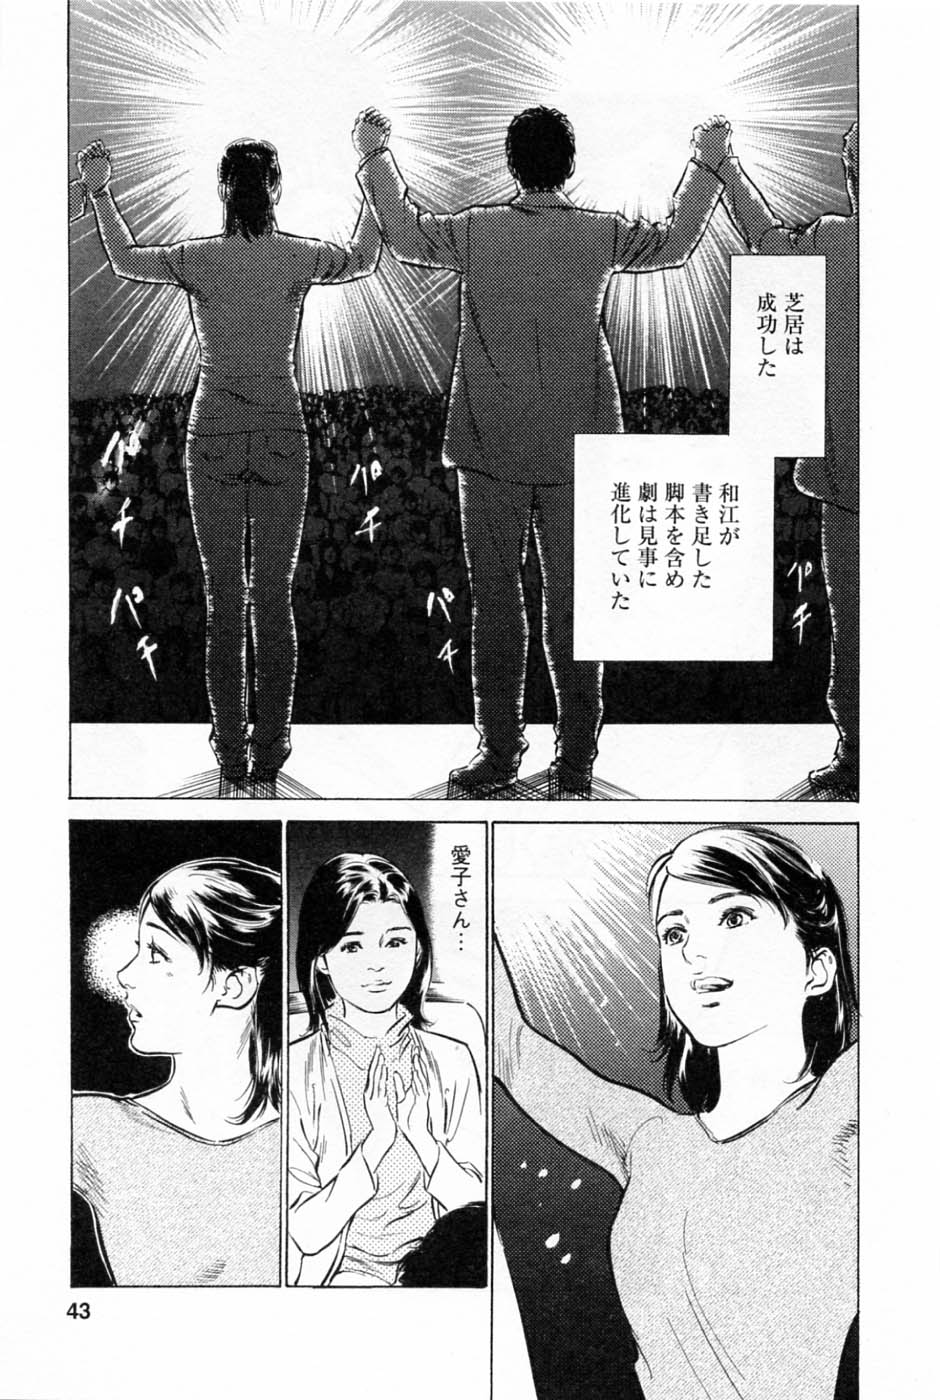 [Tomisawa Chinatsu, Hazuki Kaoru] My Pure Lady Vol.2 page 47 full